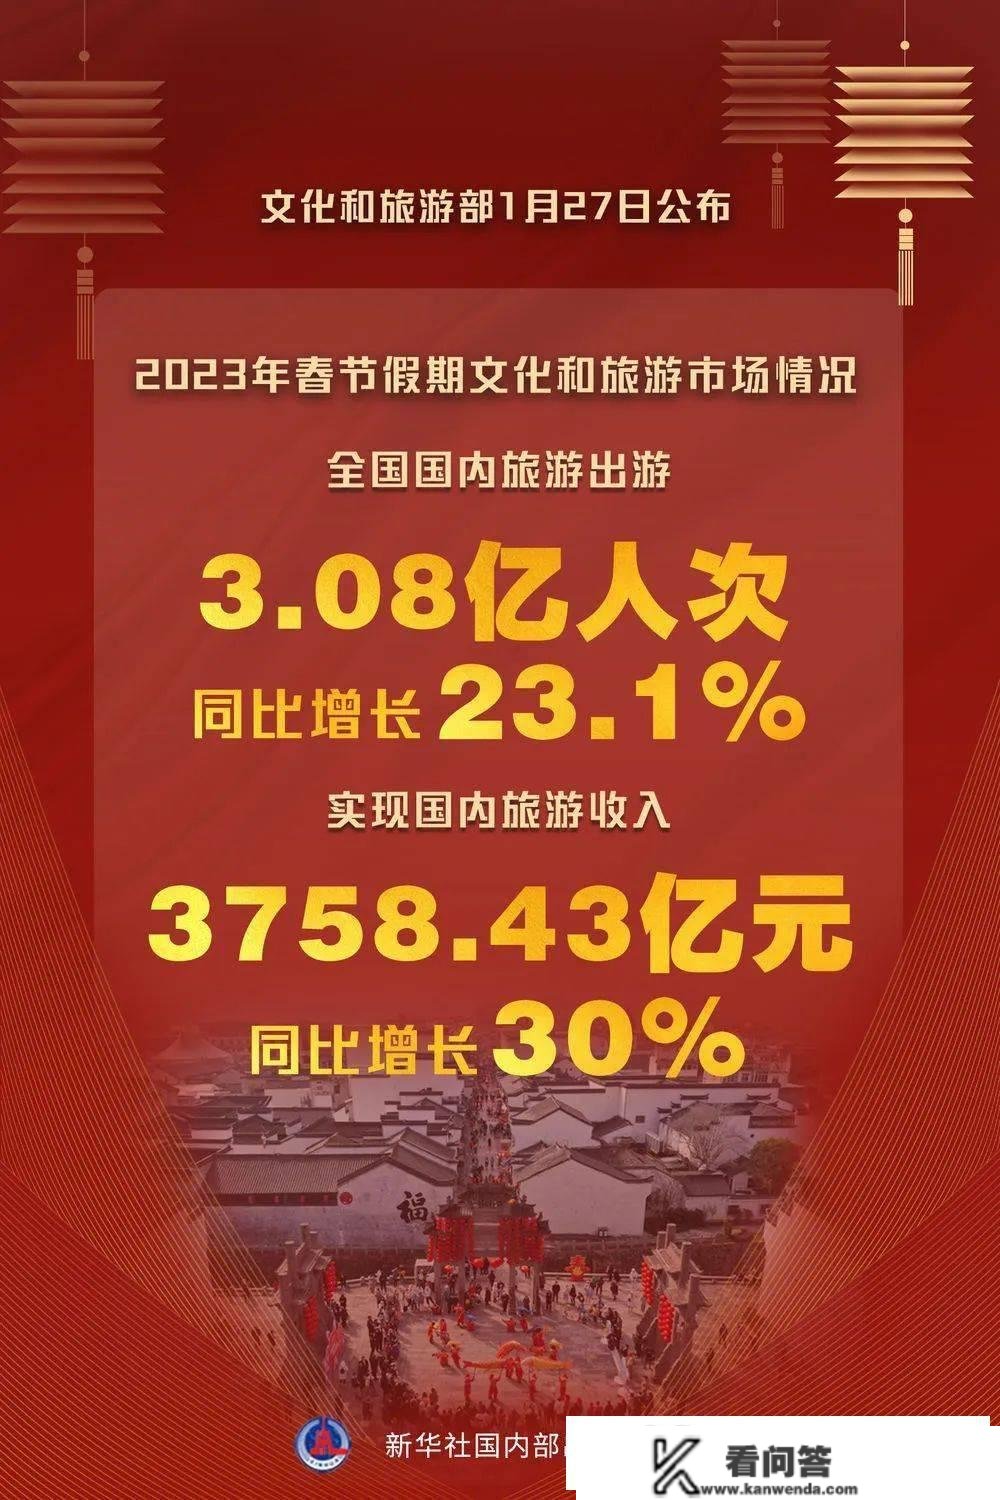 上海，323亿！2914万人次奔向上海36个商圈，此中有你吗？